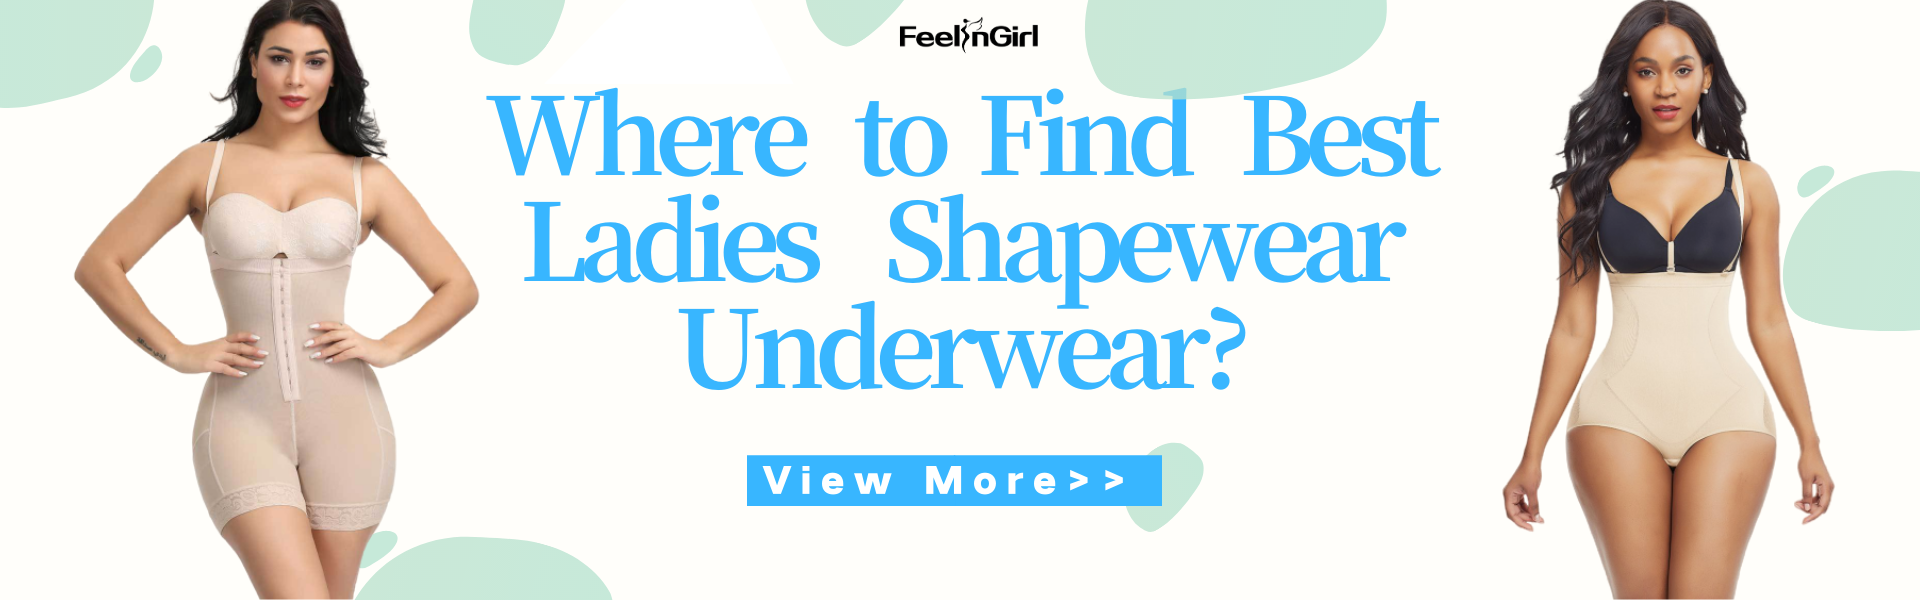 Where to Find Best Ladies Shapewear Underwear?